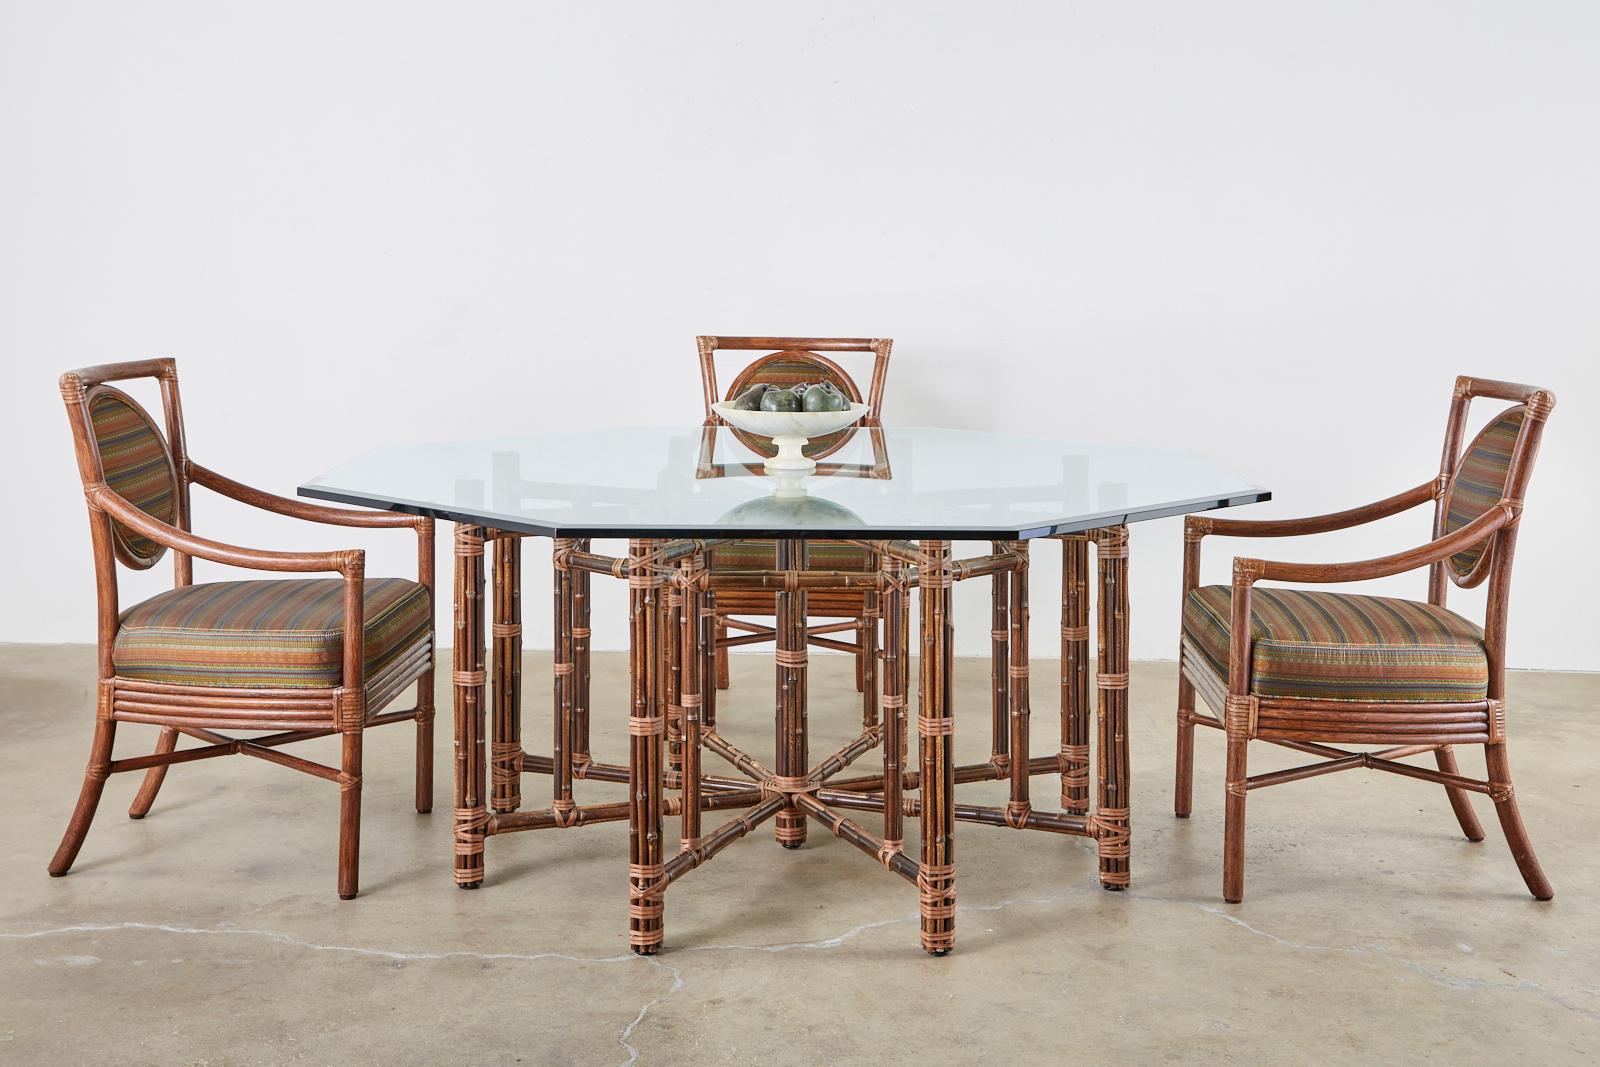 Élégant ensemble de huit chaises à manger modernes organiques en rotin de bambou par Orlando Diaz-Azcuy pour les meubles McGuire. Connu sous le nom de fauteuil Salon construit à partir de poteaux de rotin attachés ensemble avec des lacets en cuir de